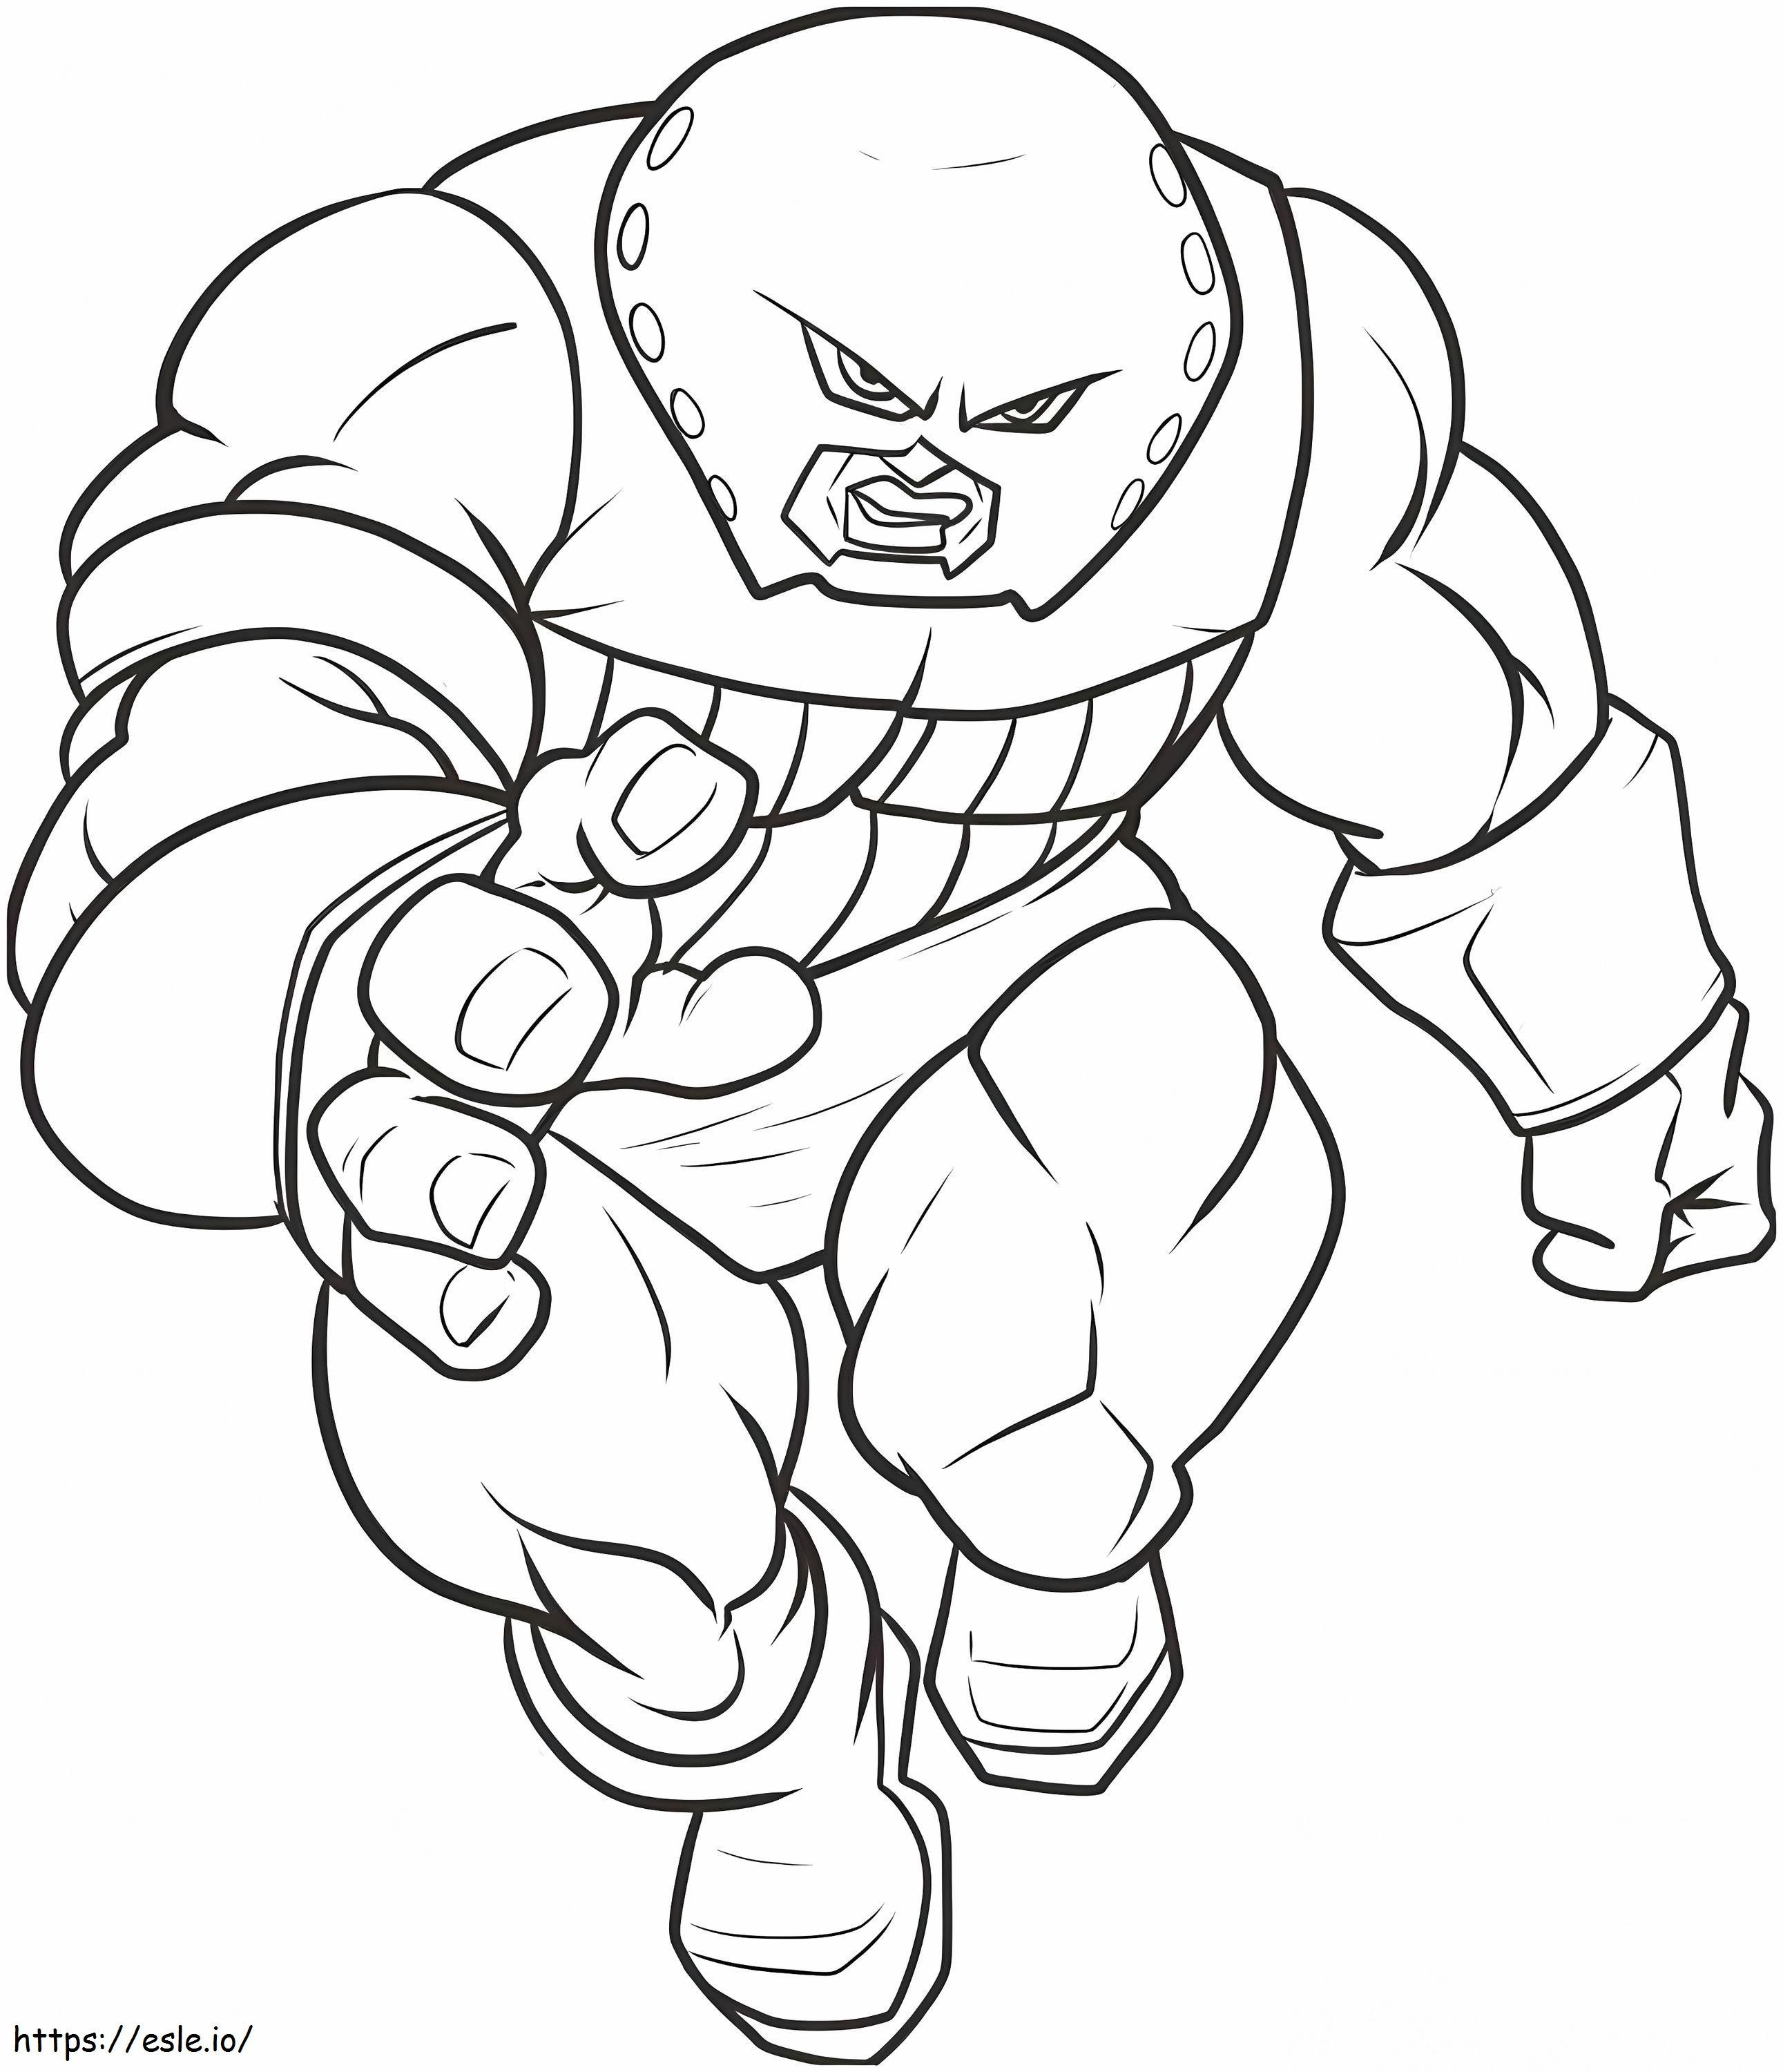 1544839187 Disegno Libro da colorare Sorprendente Come disegnare Juggernaut Passo dopo passo Personaggi Marvel del disegno del libro da colorare da colorare